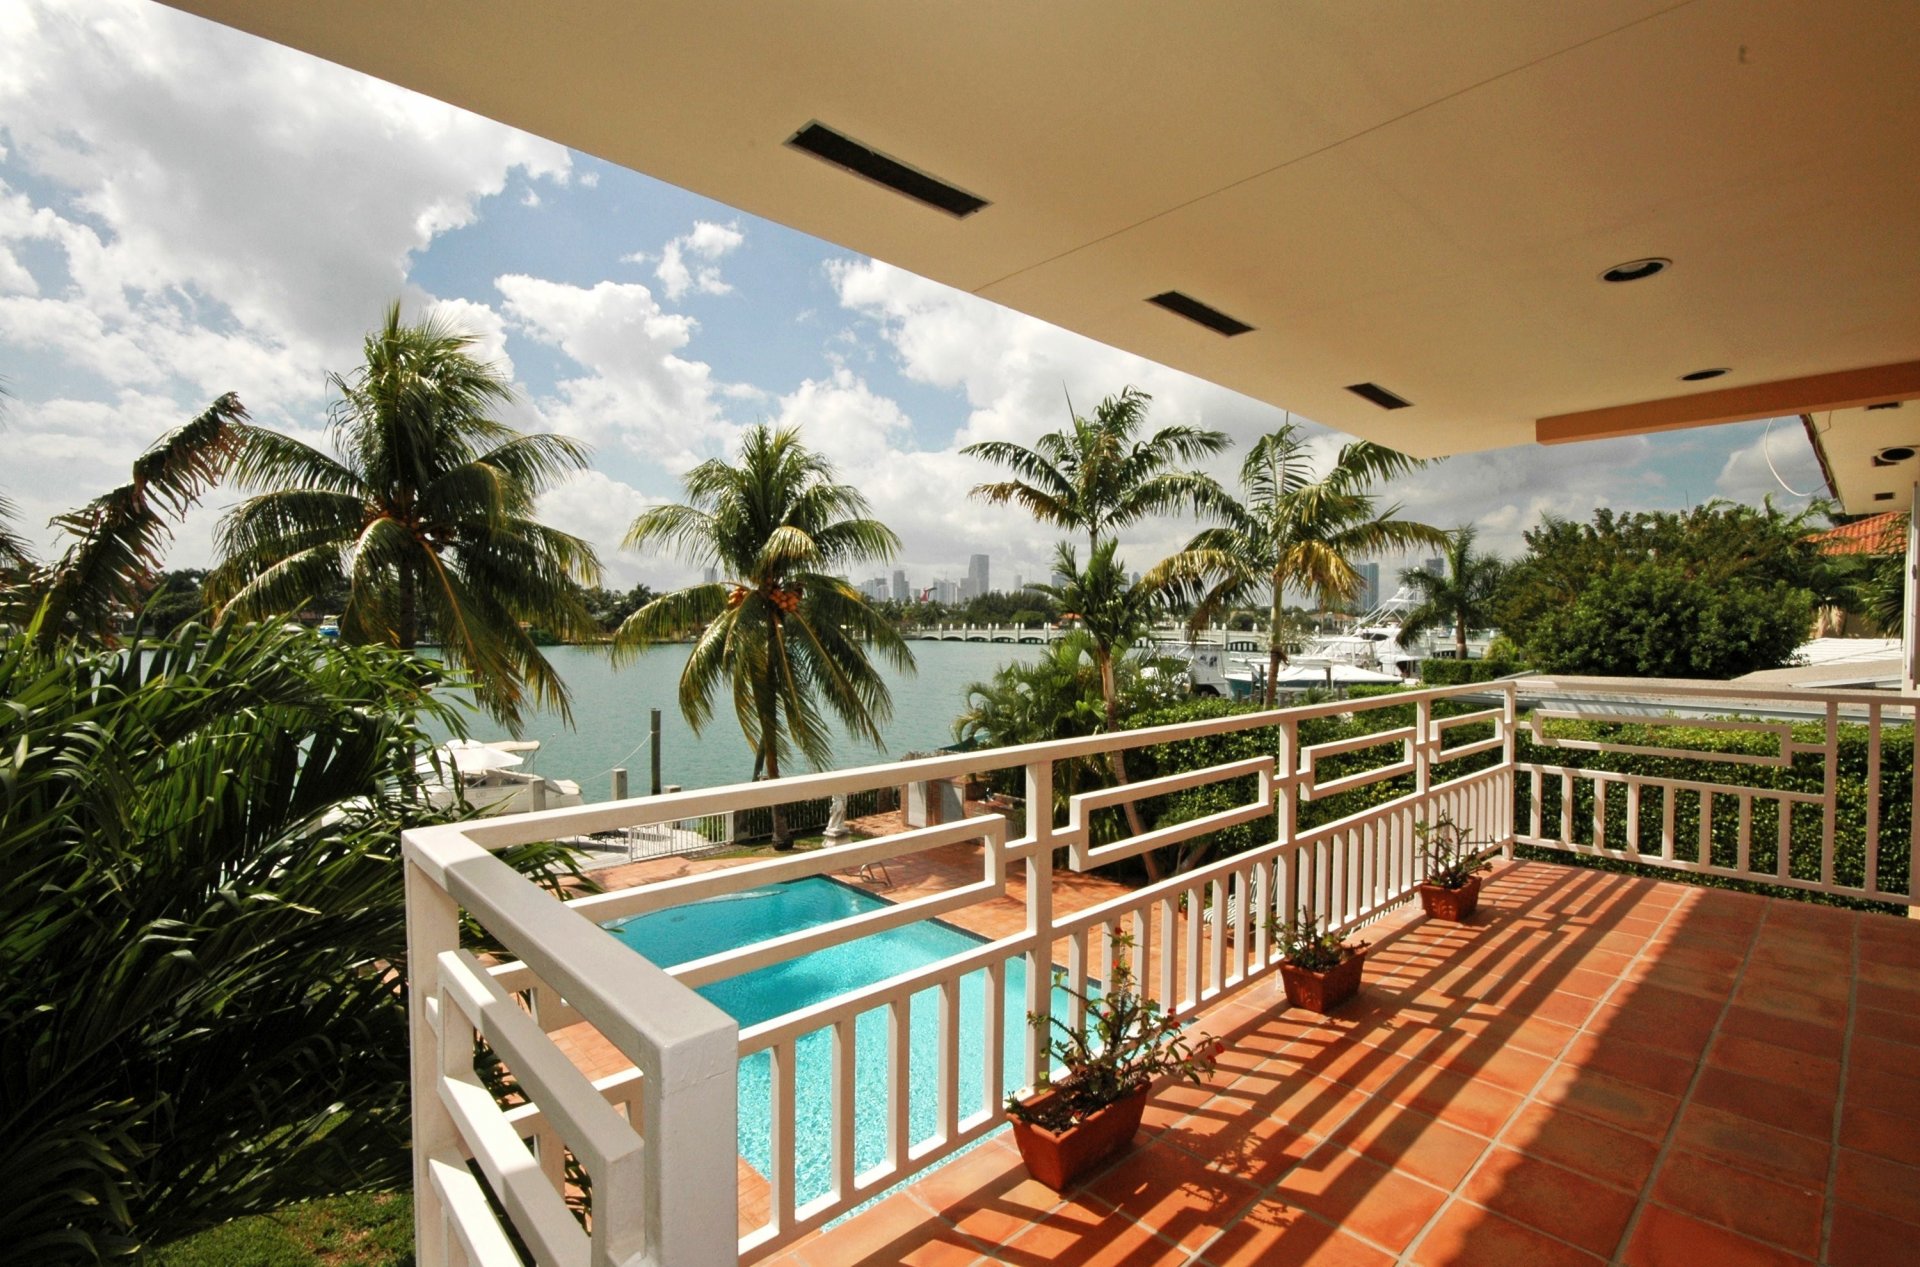 interior naturaleza piscina palmeras vacaciones resort hermoso